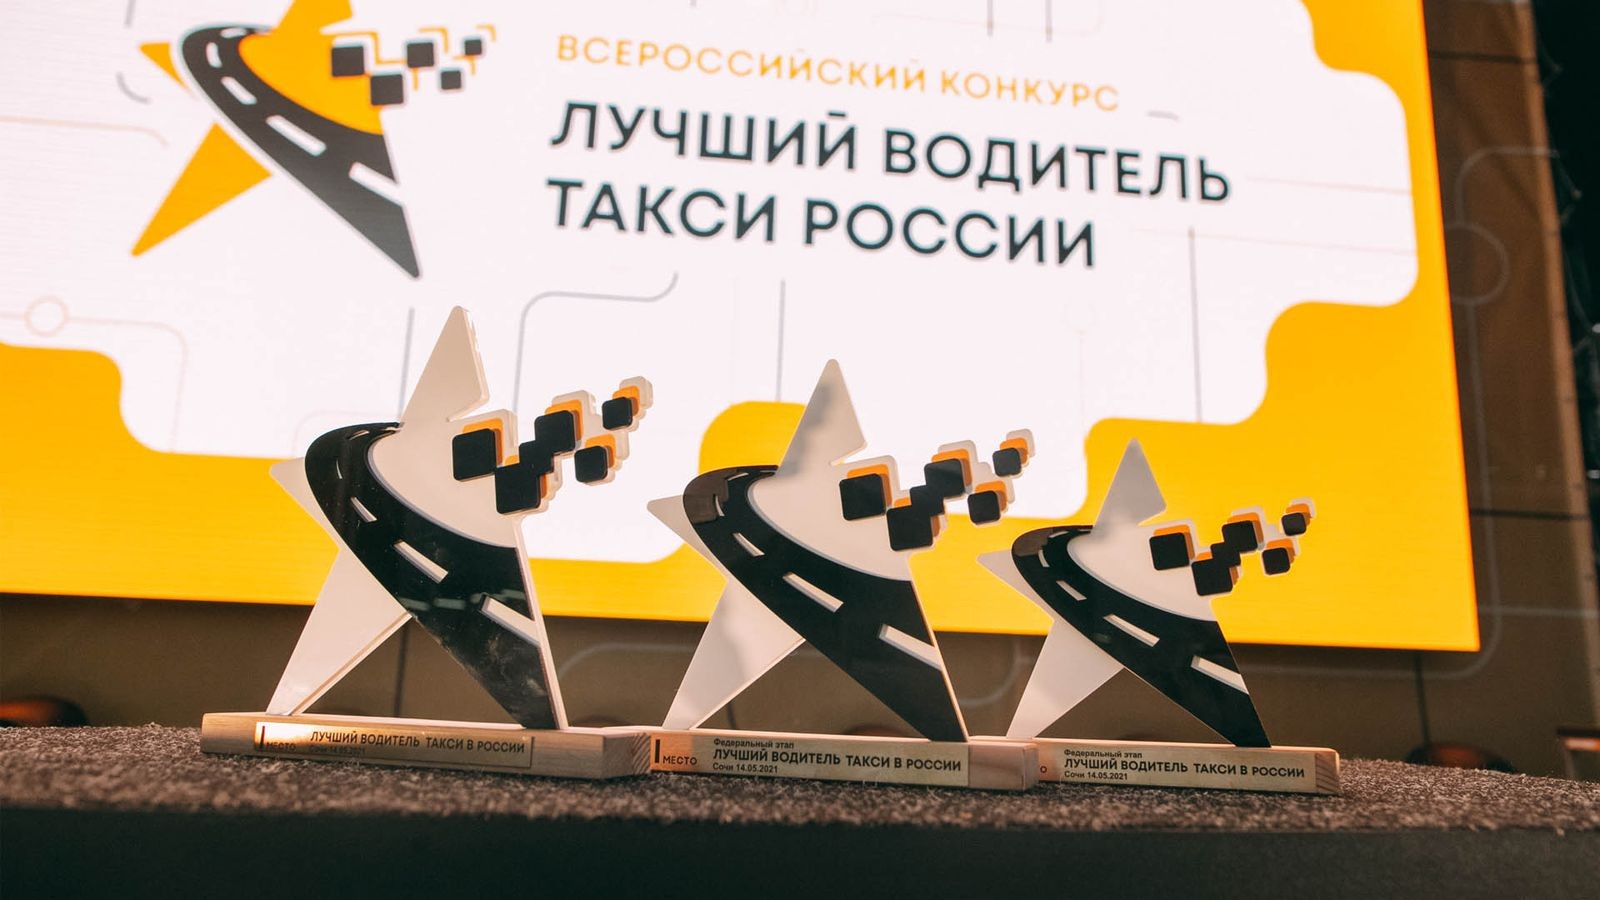 Лучшего водителя такси России выберут в мае